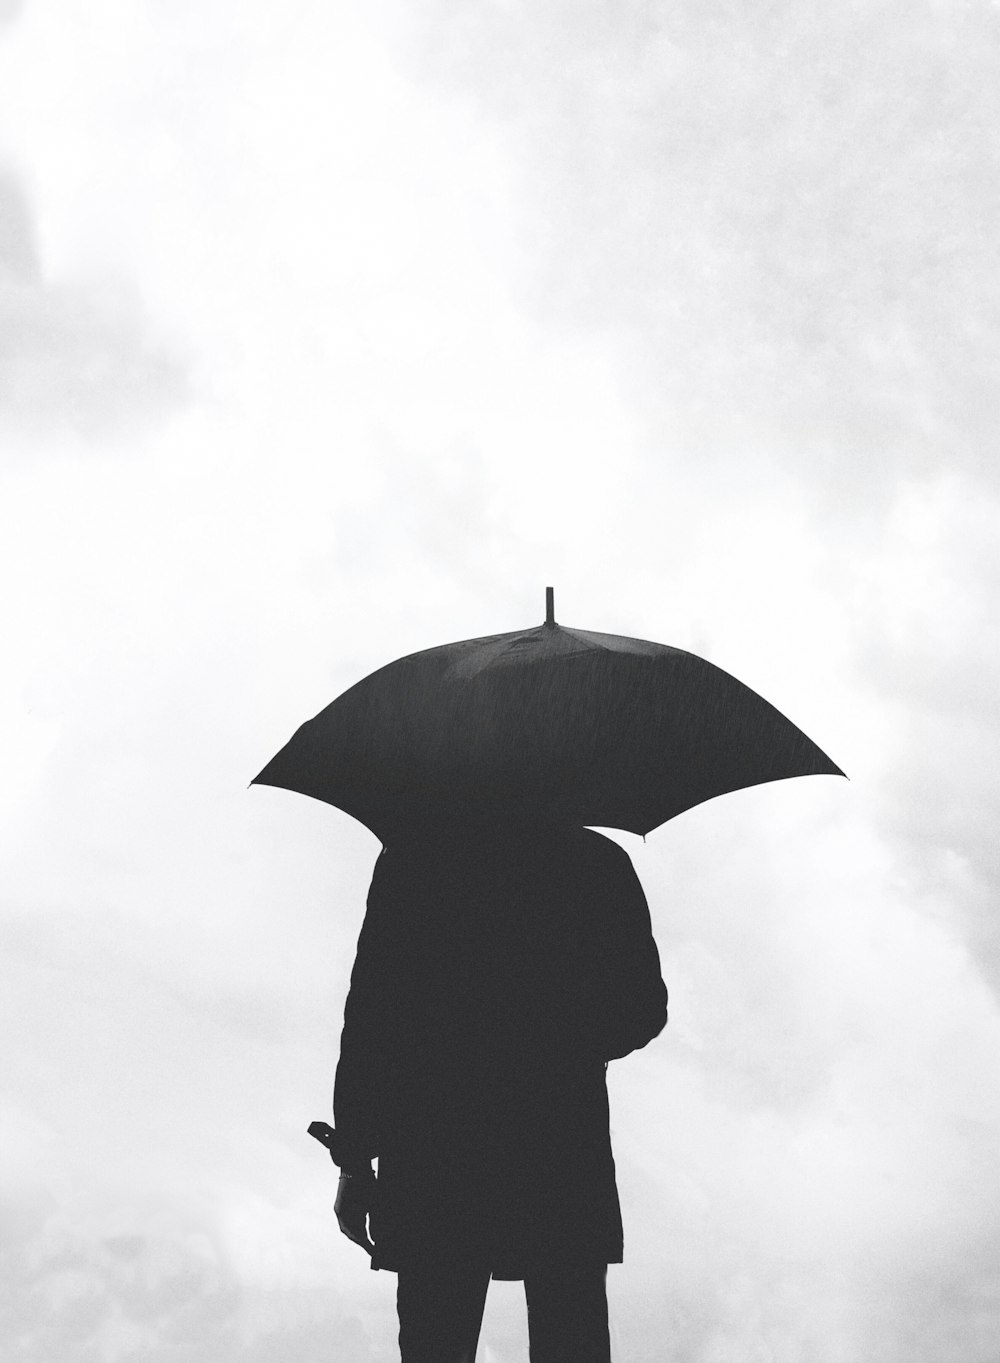 흐린 하늘 아래 우산 아래 사람의 실루엣